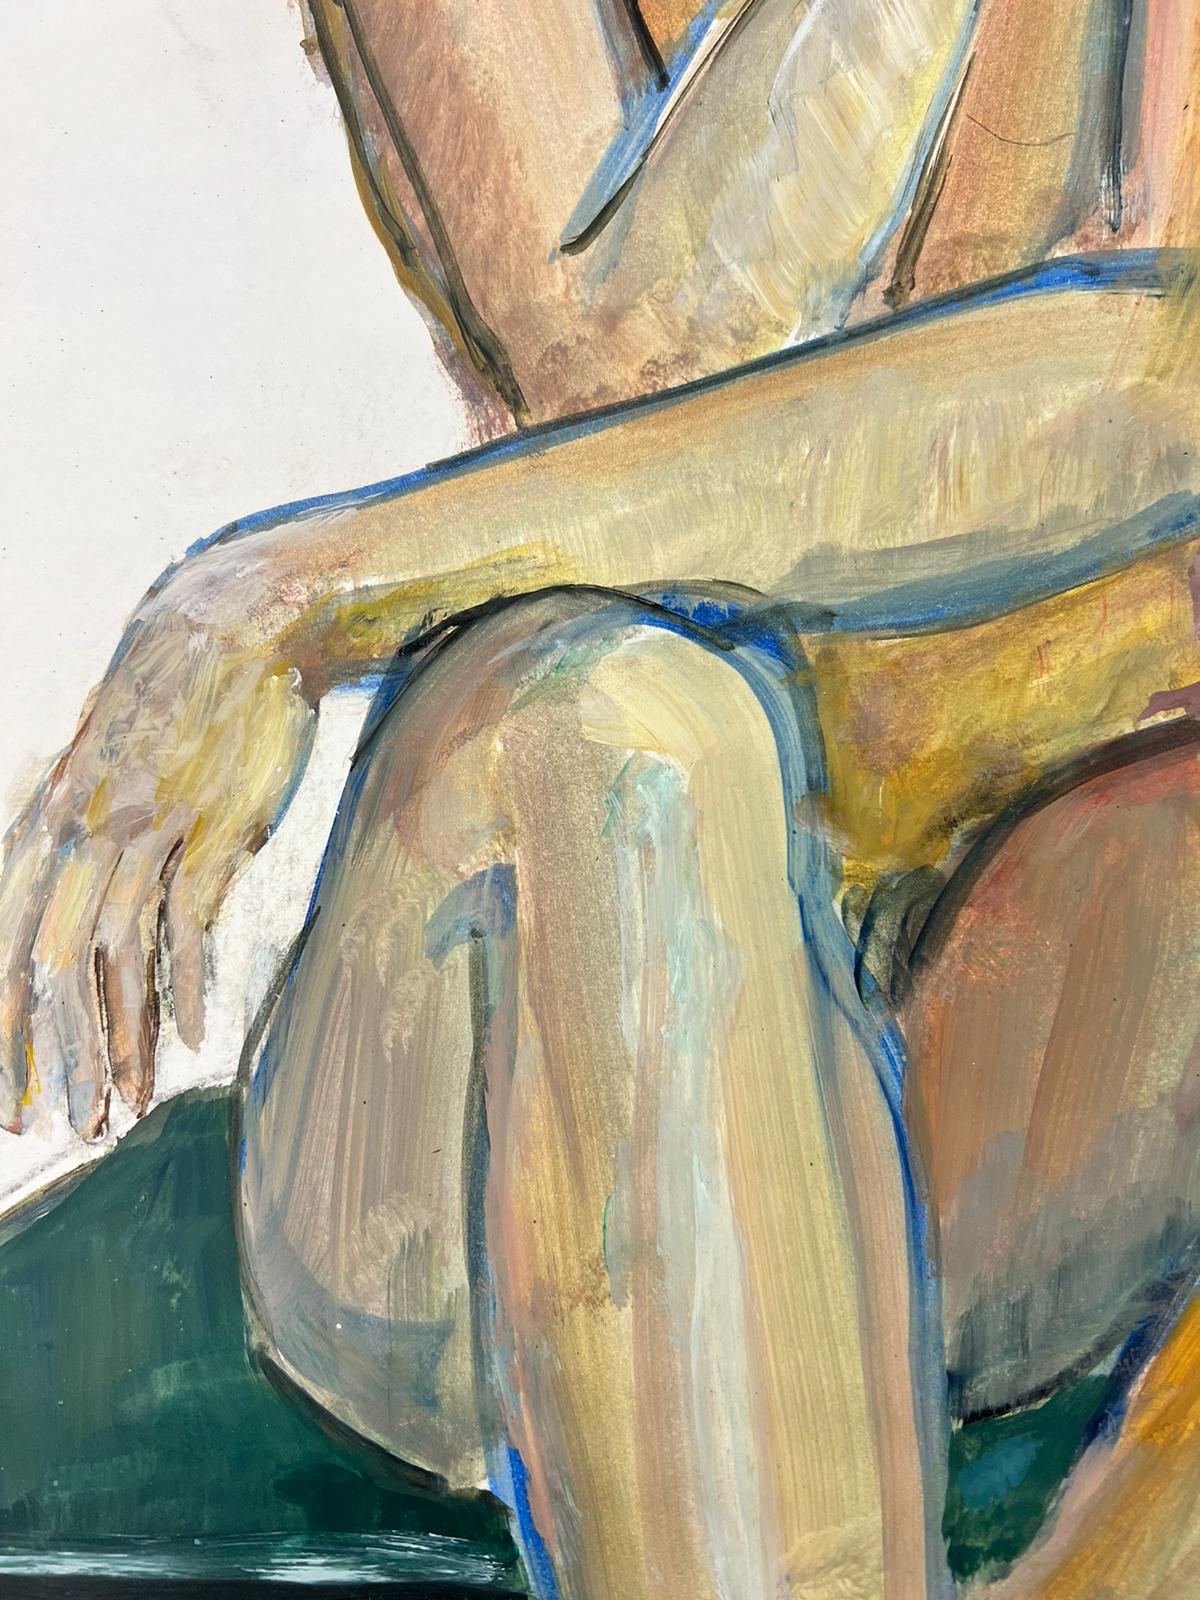 Le modèle Artistics (femme en bas et bretelles)
Portrait d'une femme nue allongée
École française, vers 1970
signé indistinctement 
double face
peinture à l'huile sur carton, non encadrée
taille : 25 x 17 pouces
état : globalement très bon, quelques